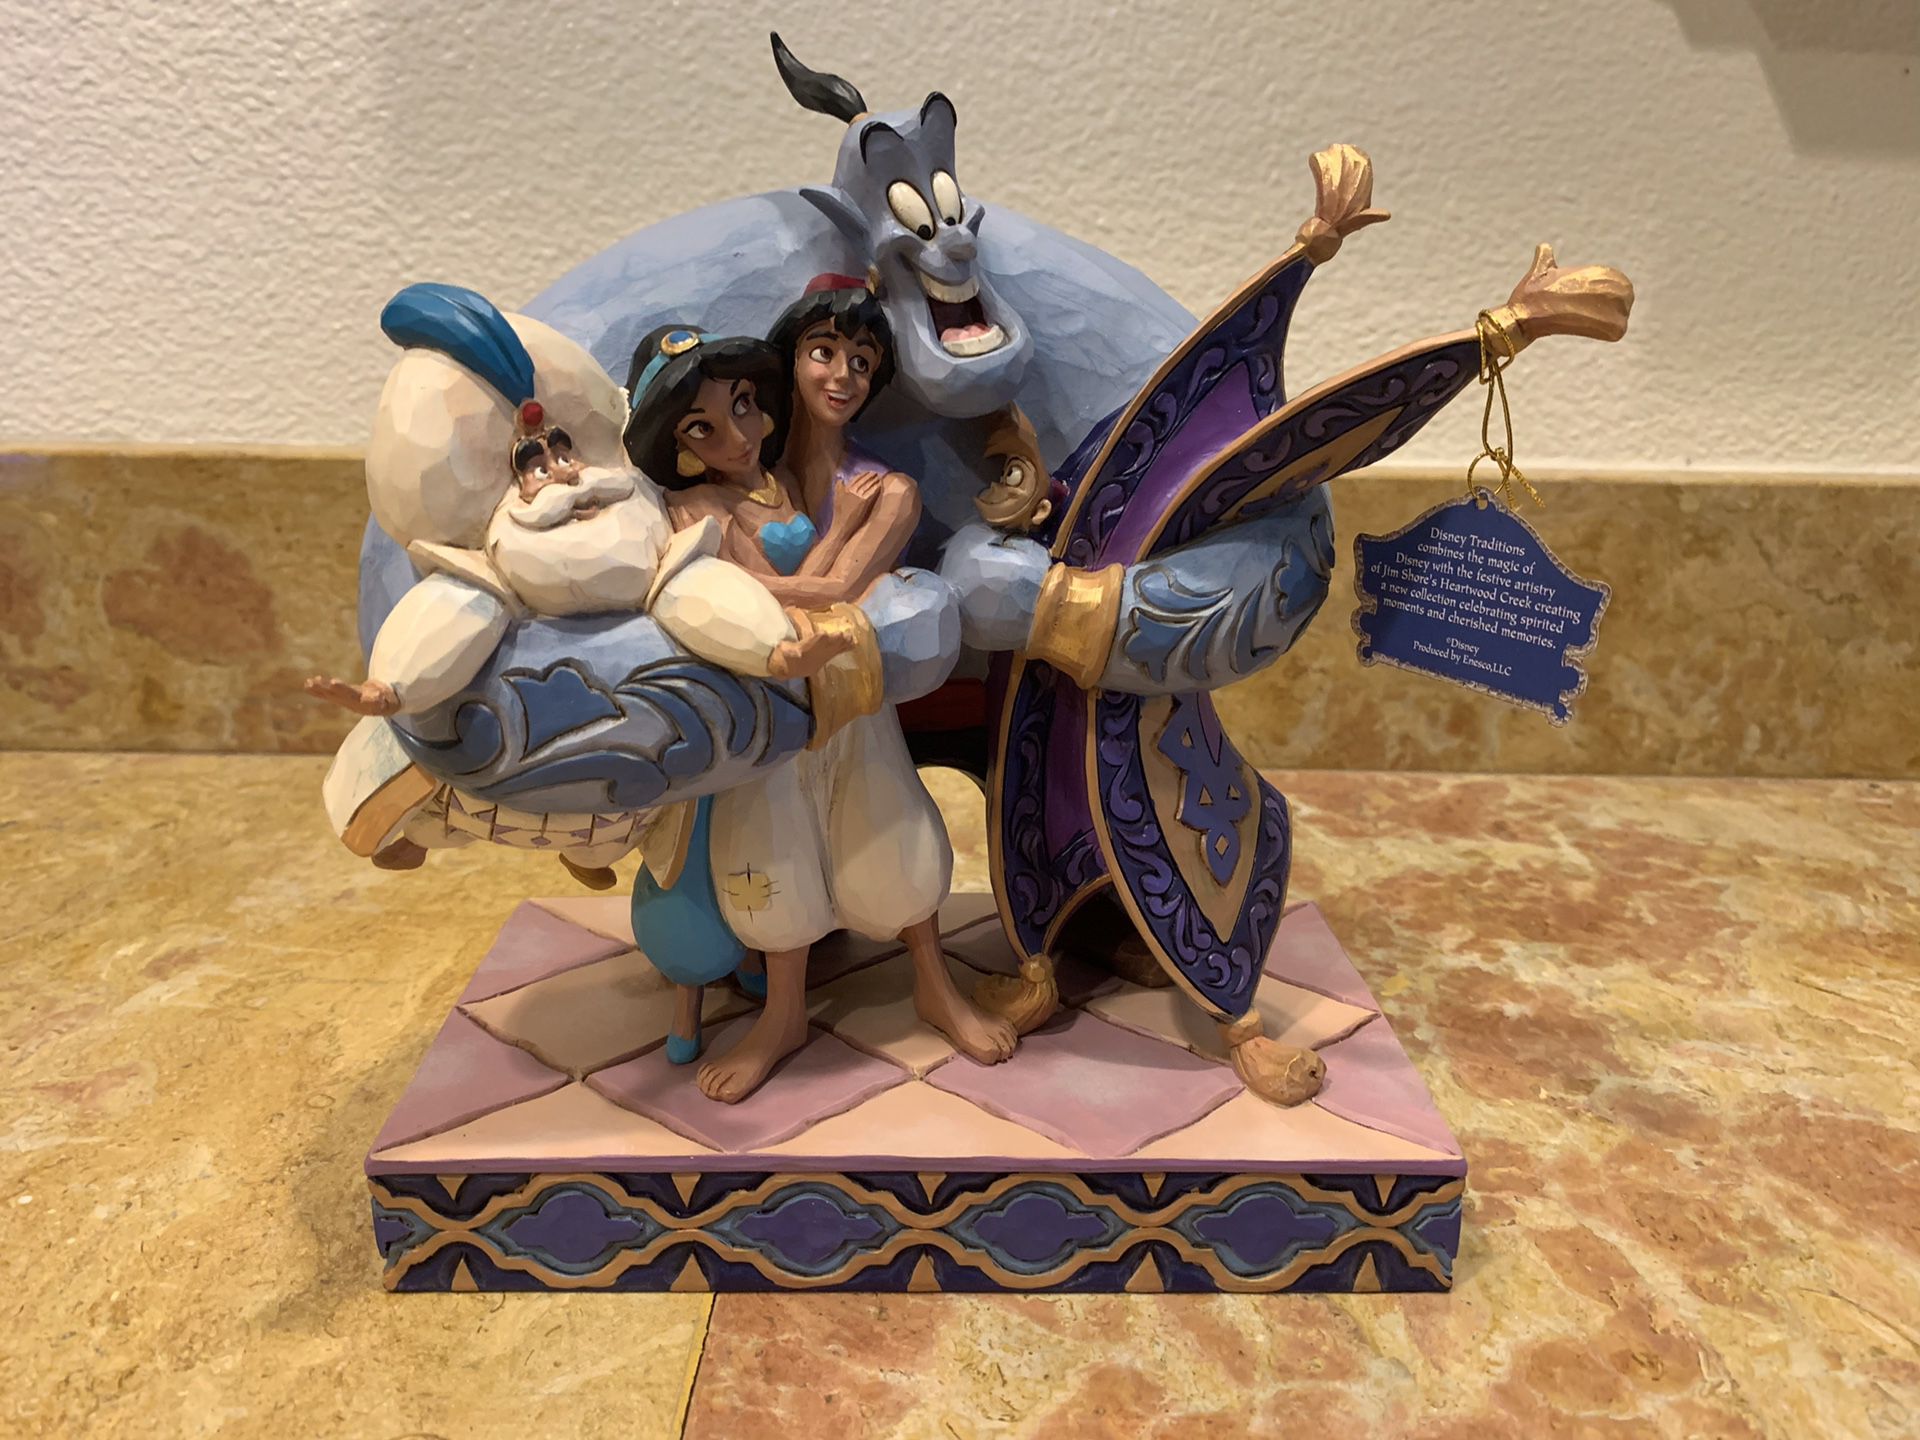 Brand New - Disney’s Aladdin “Group Hug” Figurine